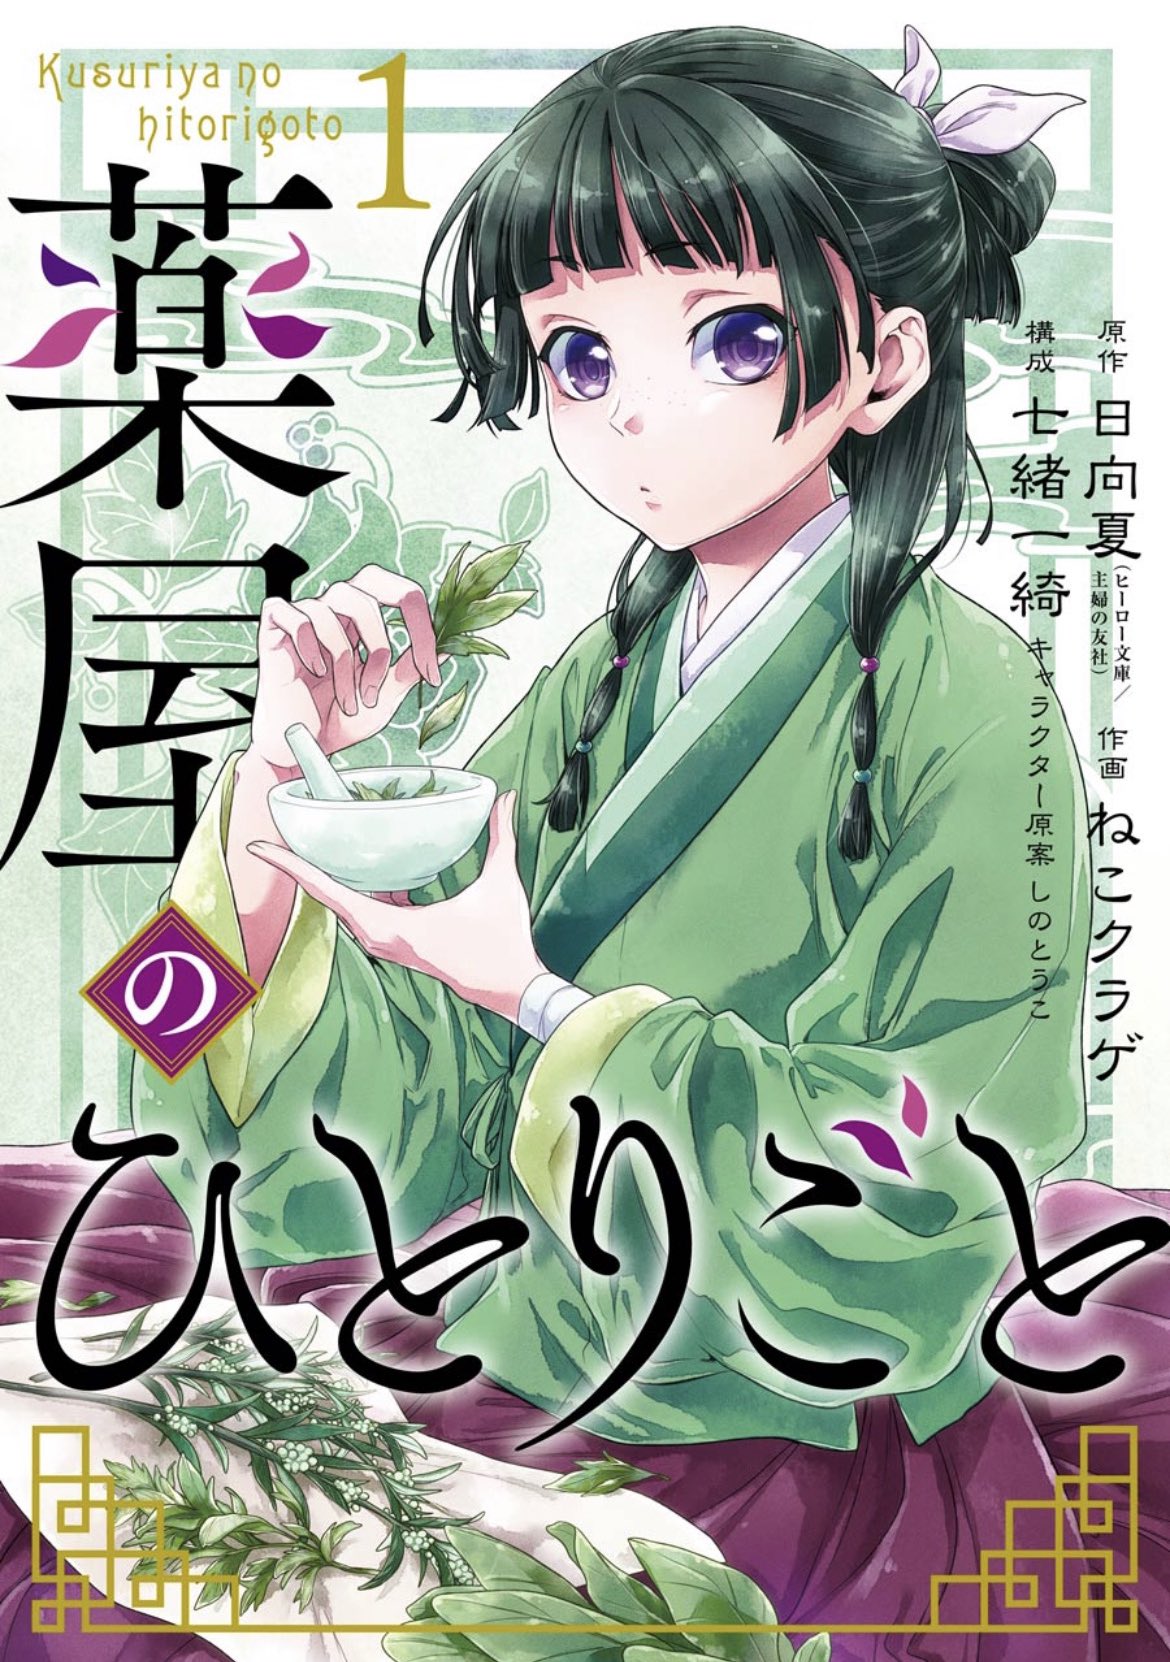 Kusuriya manga 01.jpg